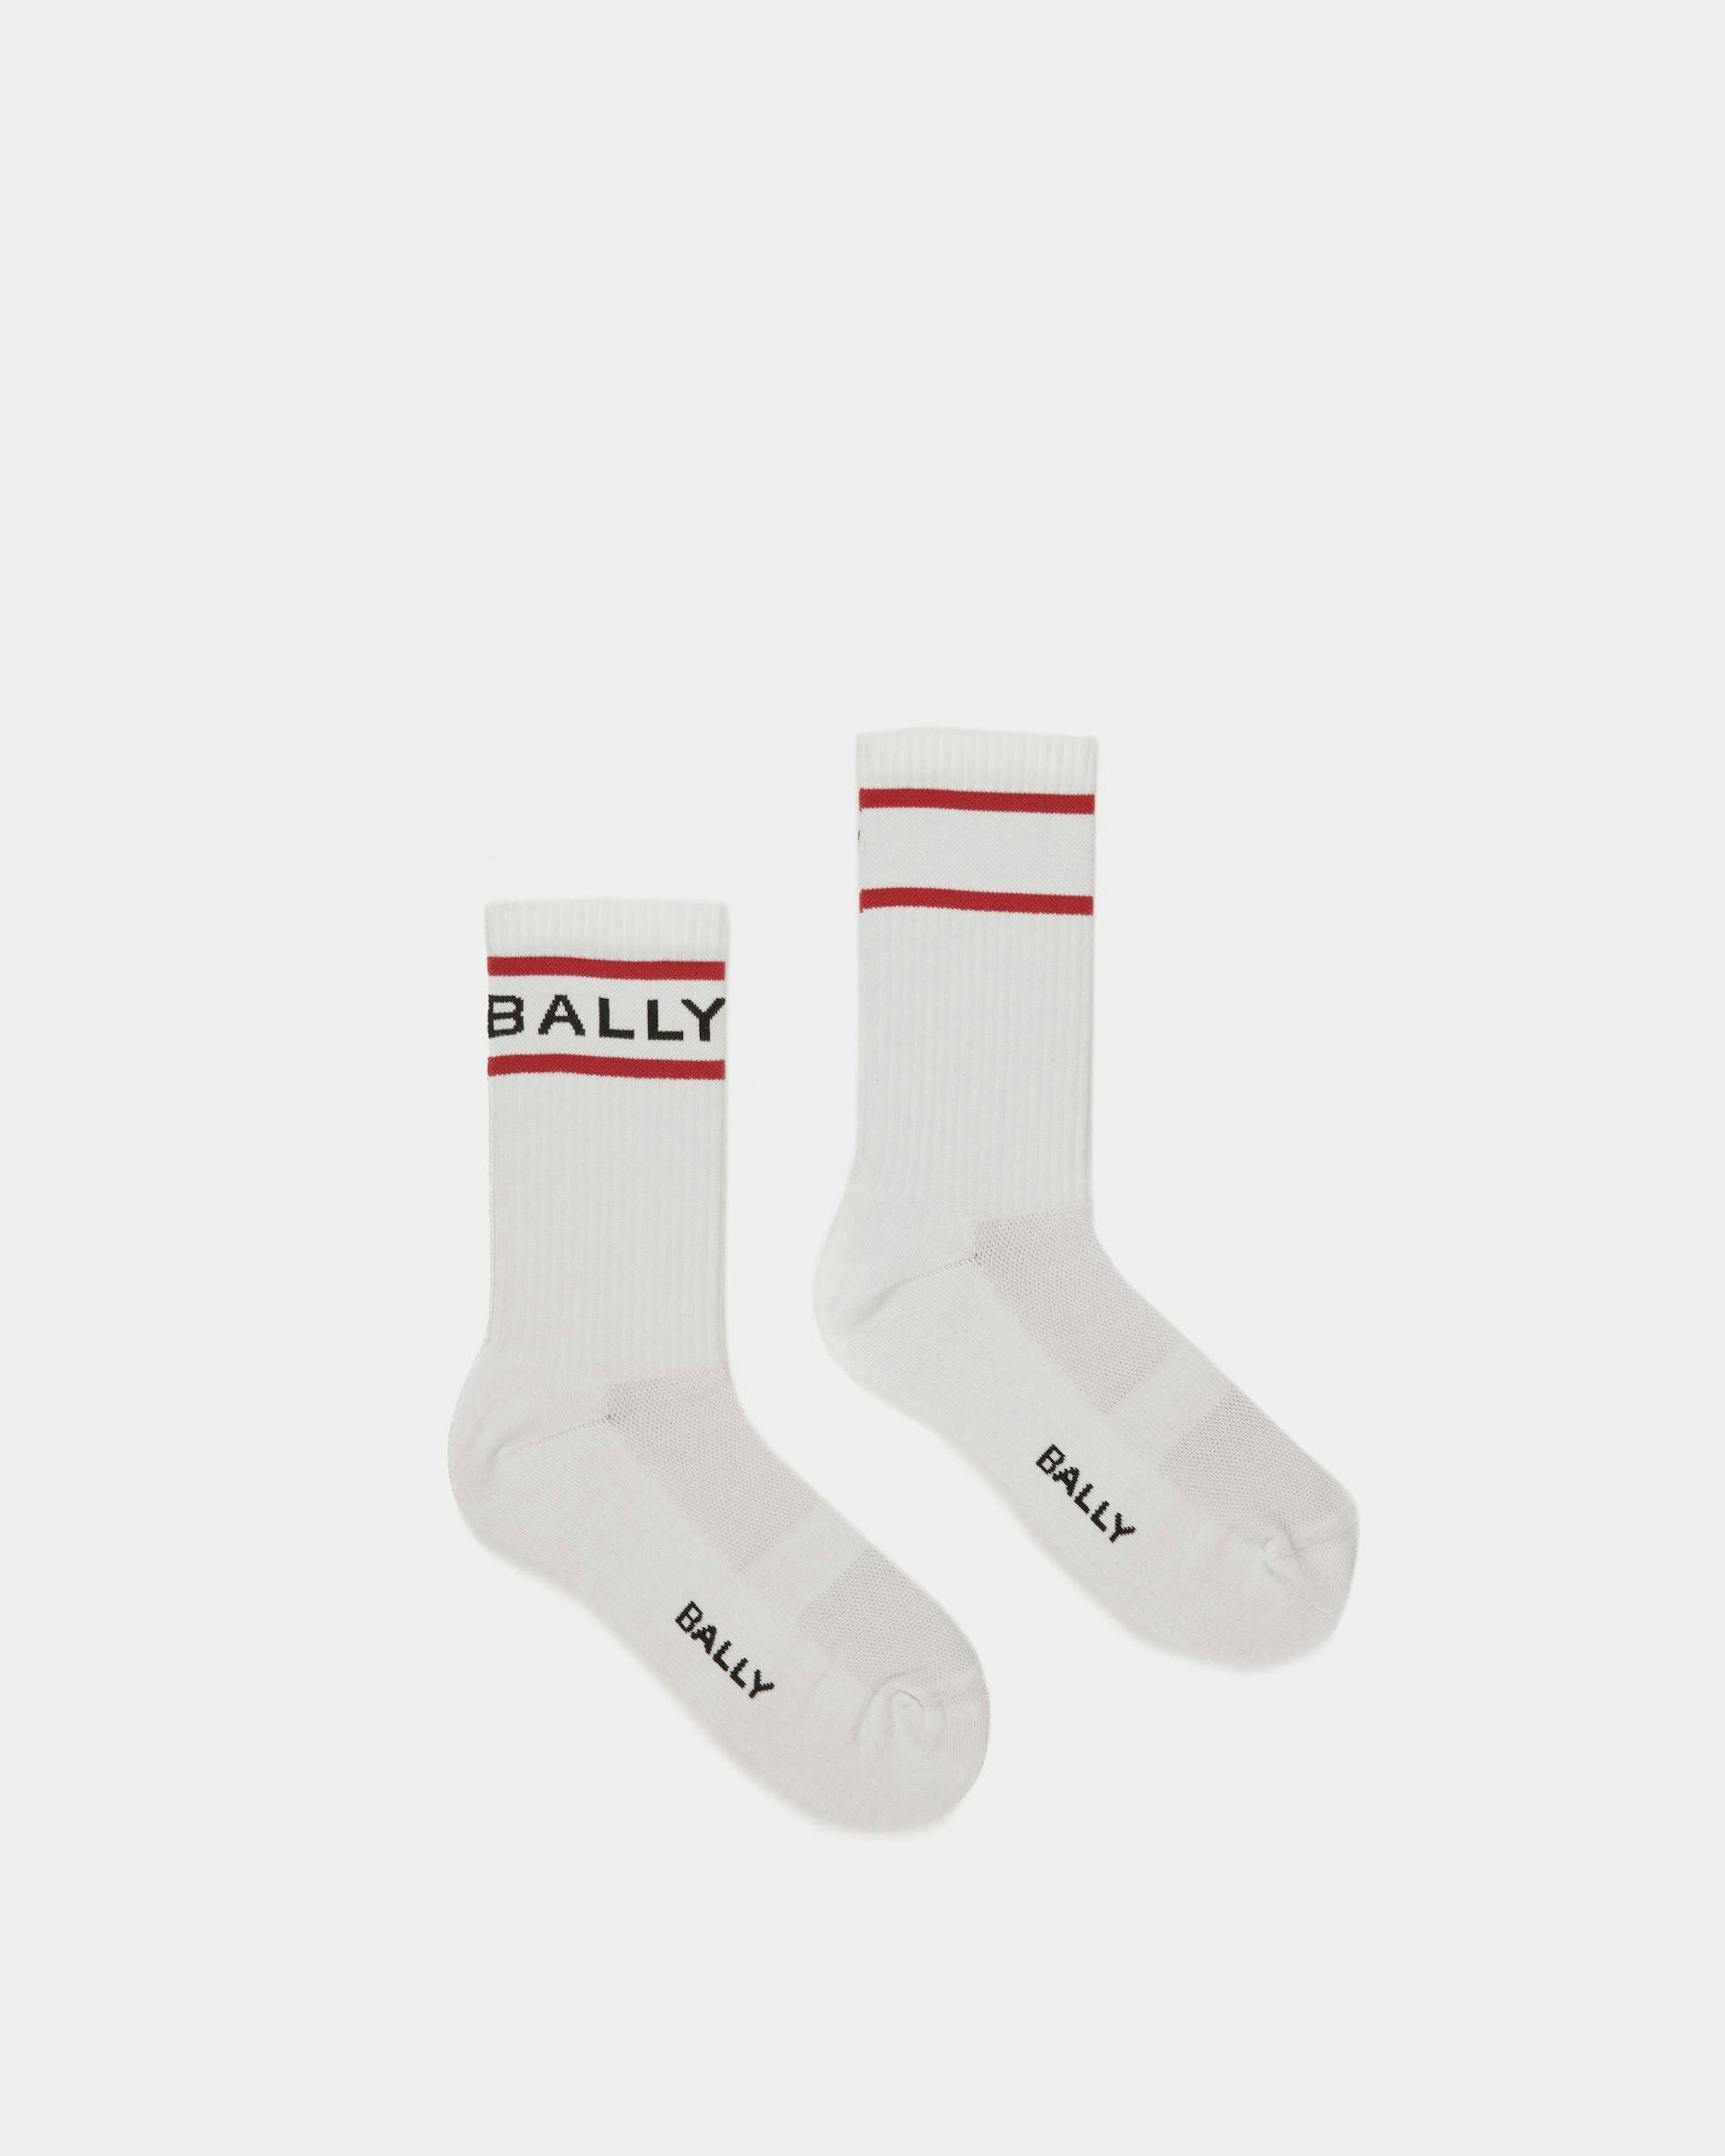 Bally Stripe Socks In White And Deep Ruby - Men's - Bally - 01